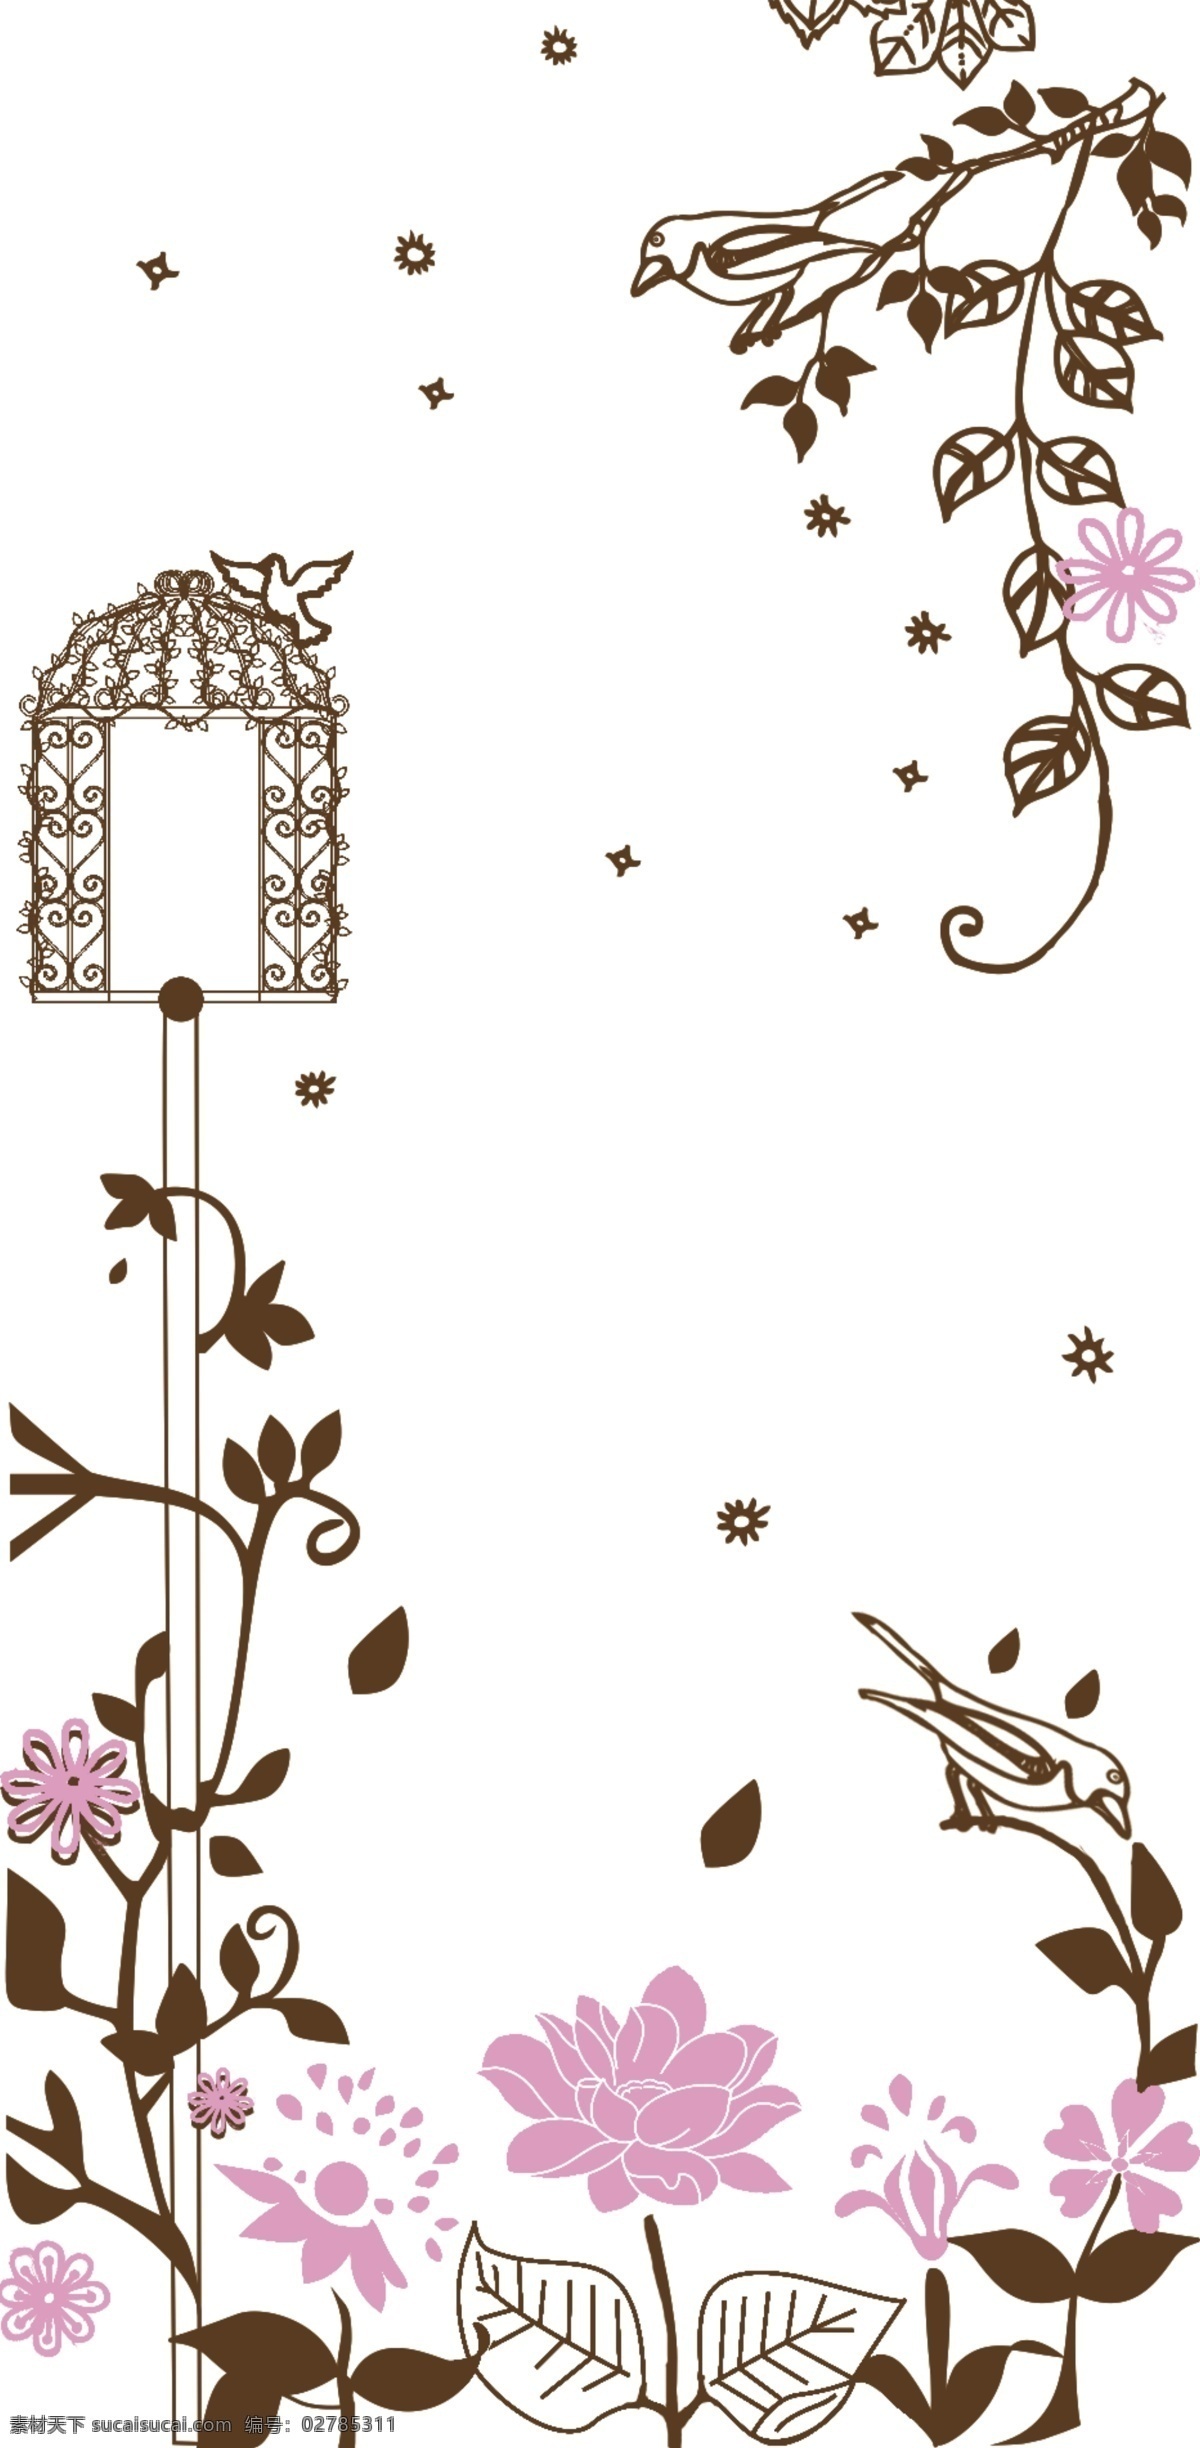 鸟笼花手机壳 彩绘手机壳 时尚 手机壳 彩印 打印 卡通 花 鸟 玫瑰 鸟笼 sky 包装设计